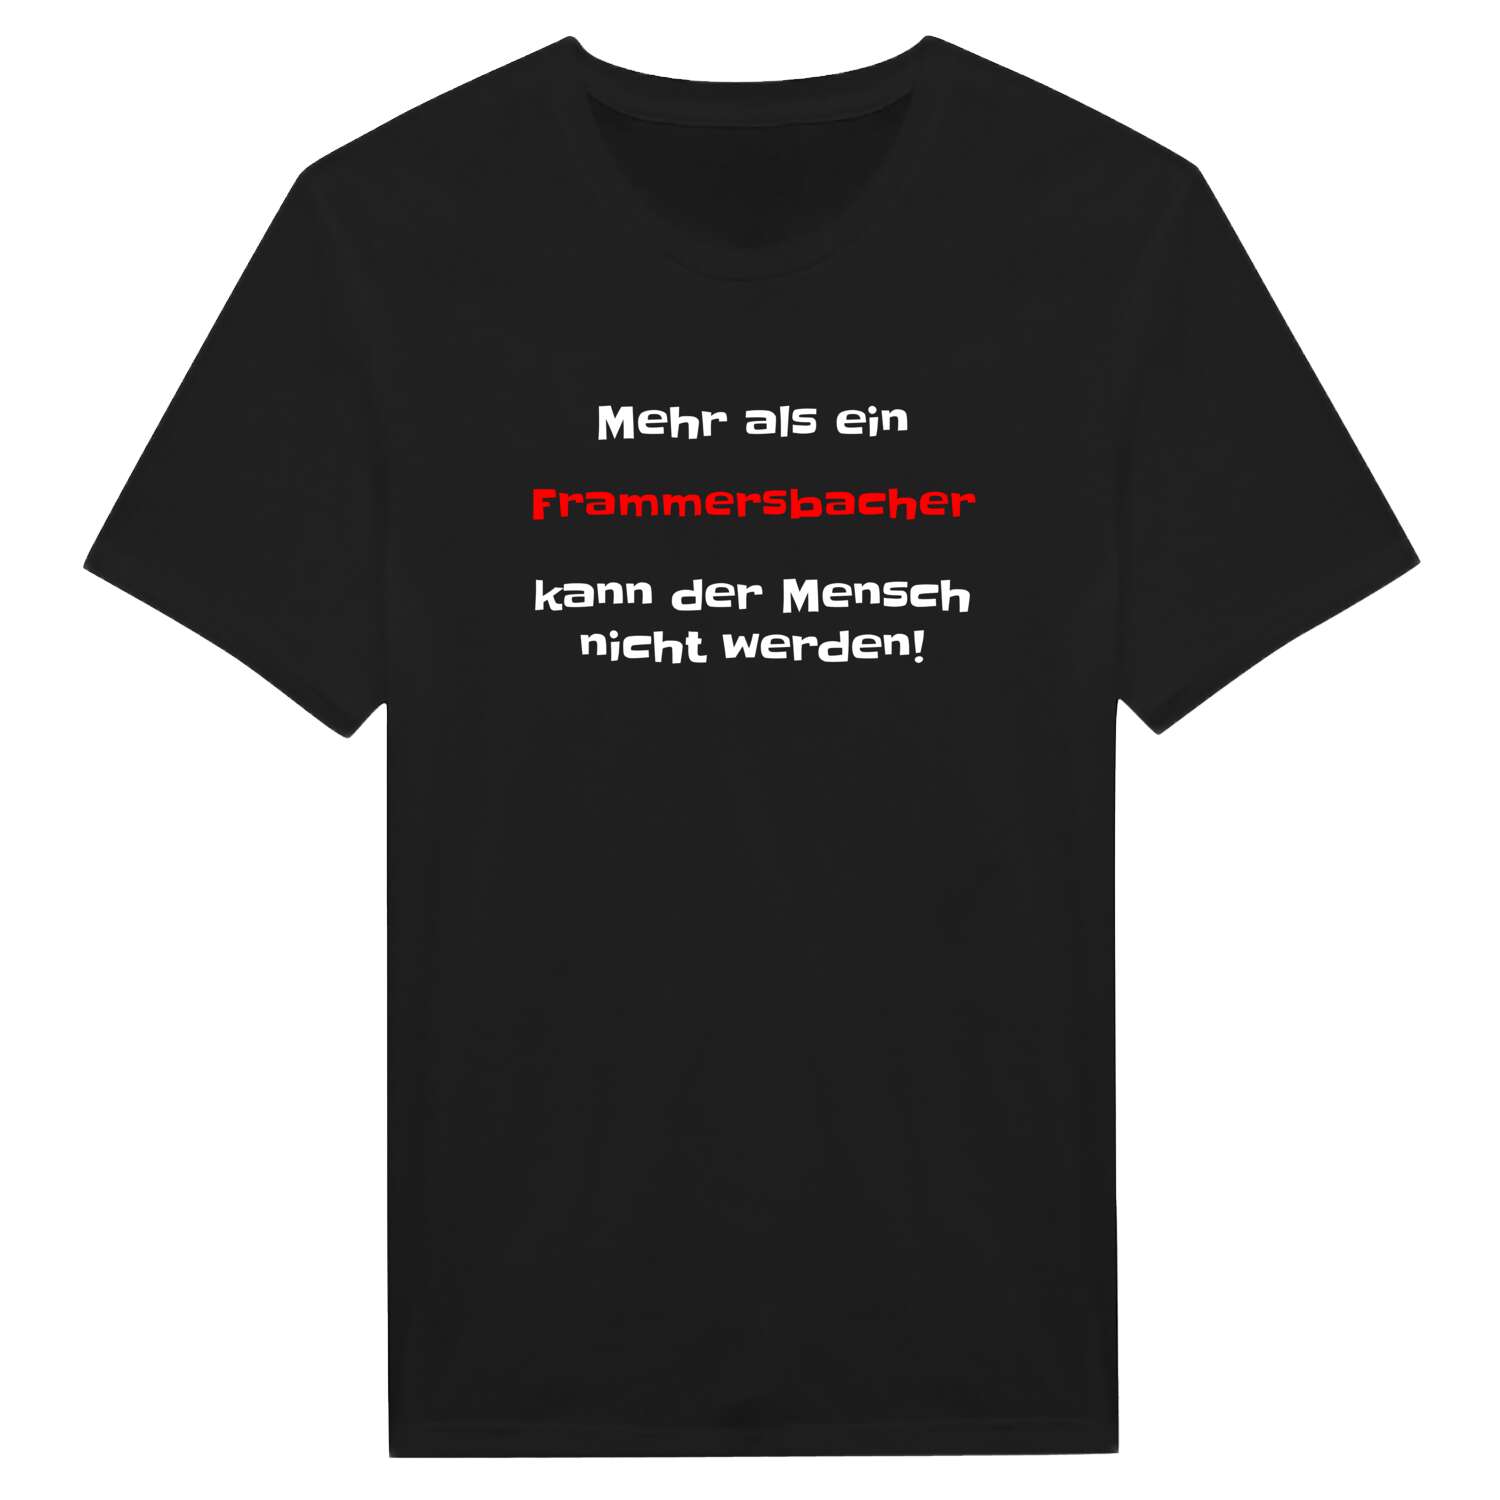 Frammersbach T-Shirt »Mehr als ein«